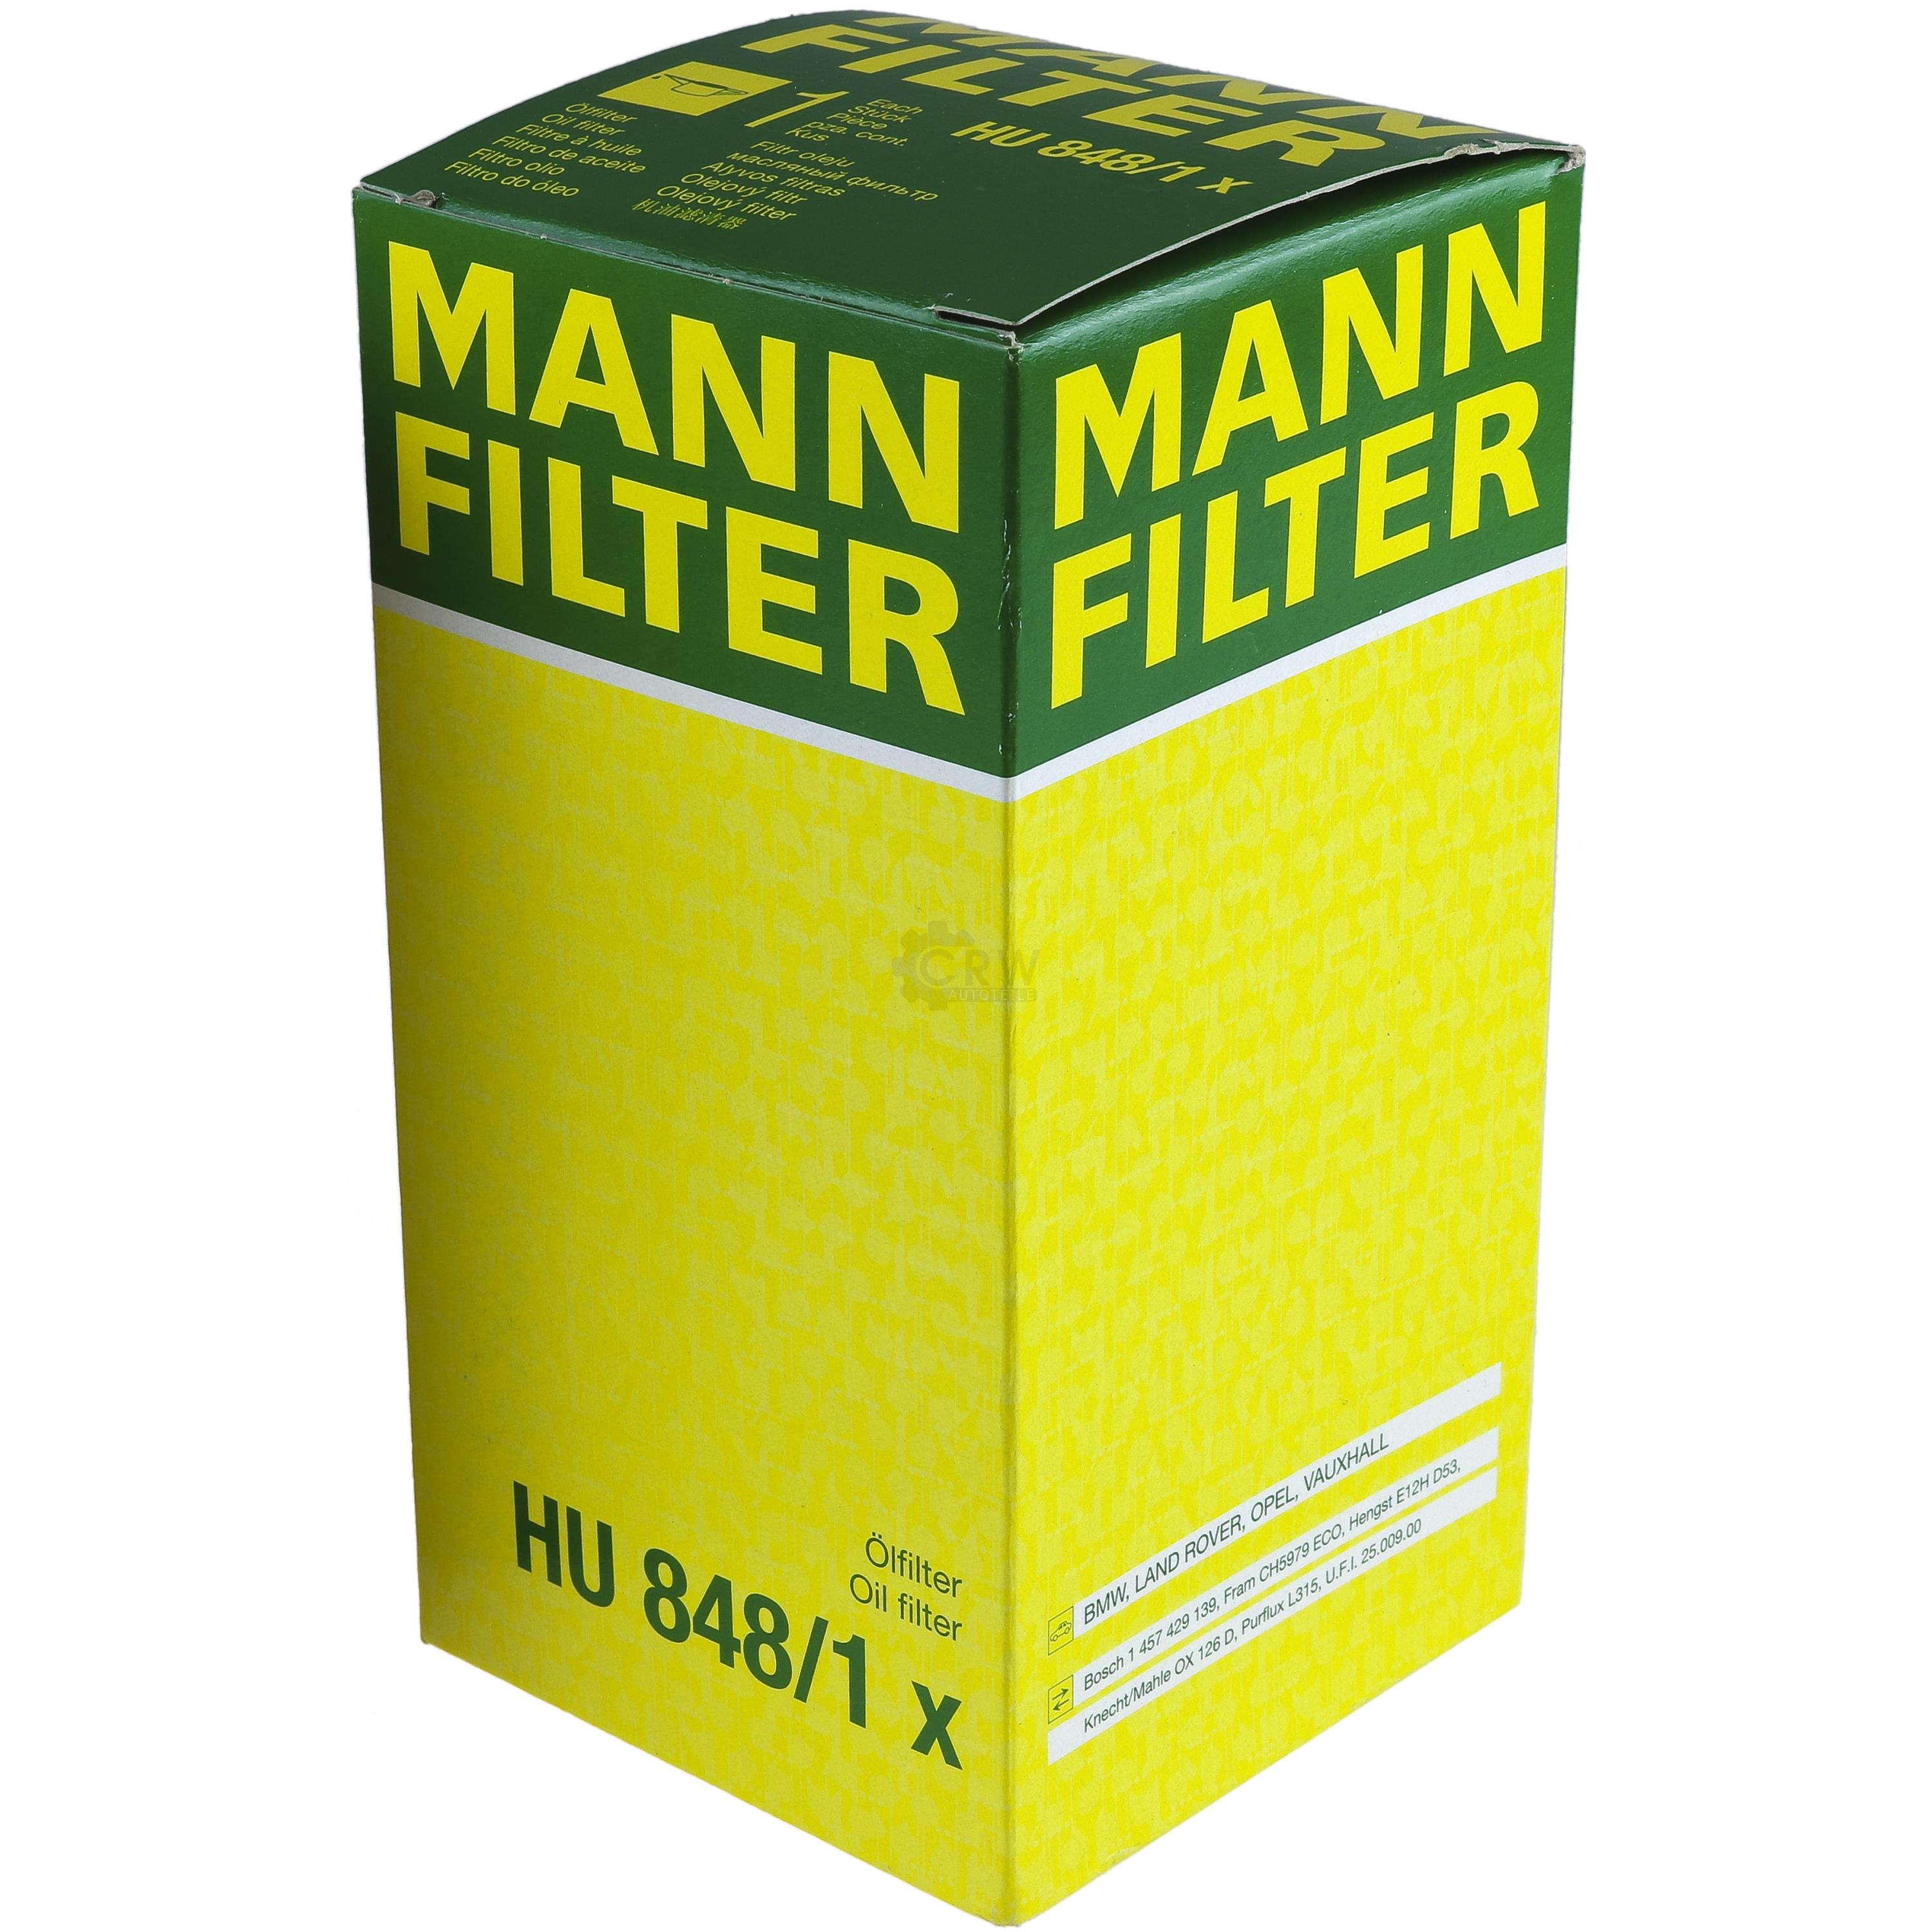 MANN-FILTER Ölfilter HU 848/1 x Oil Filter